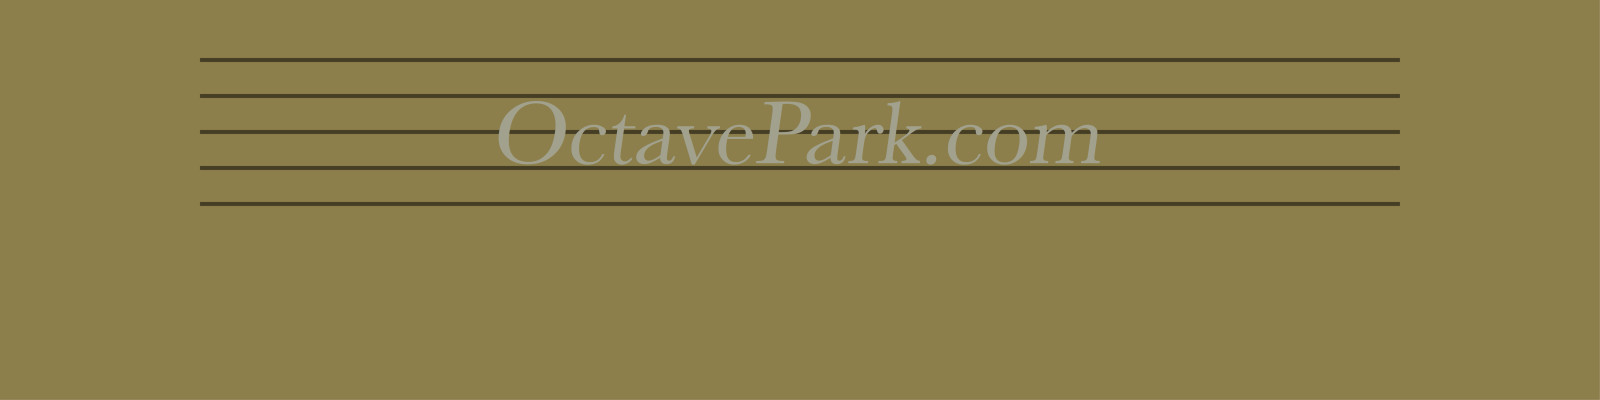 cropped-OctaveParkcom-slanted-1600x400-2.jpg